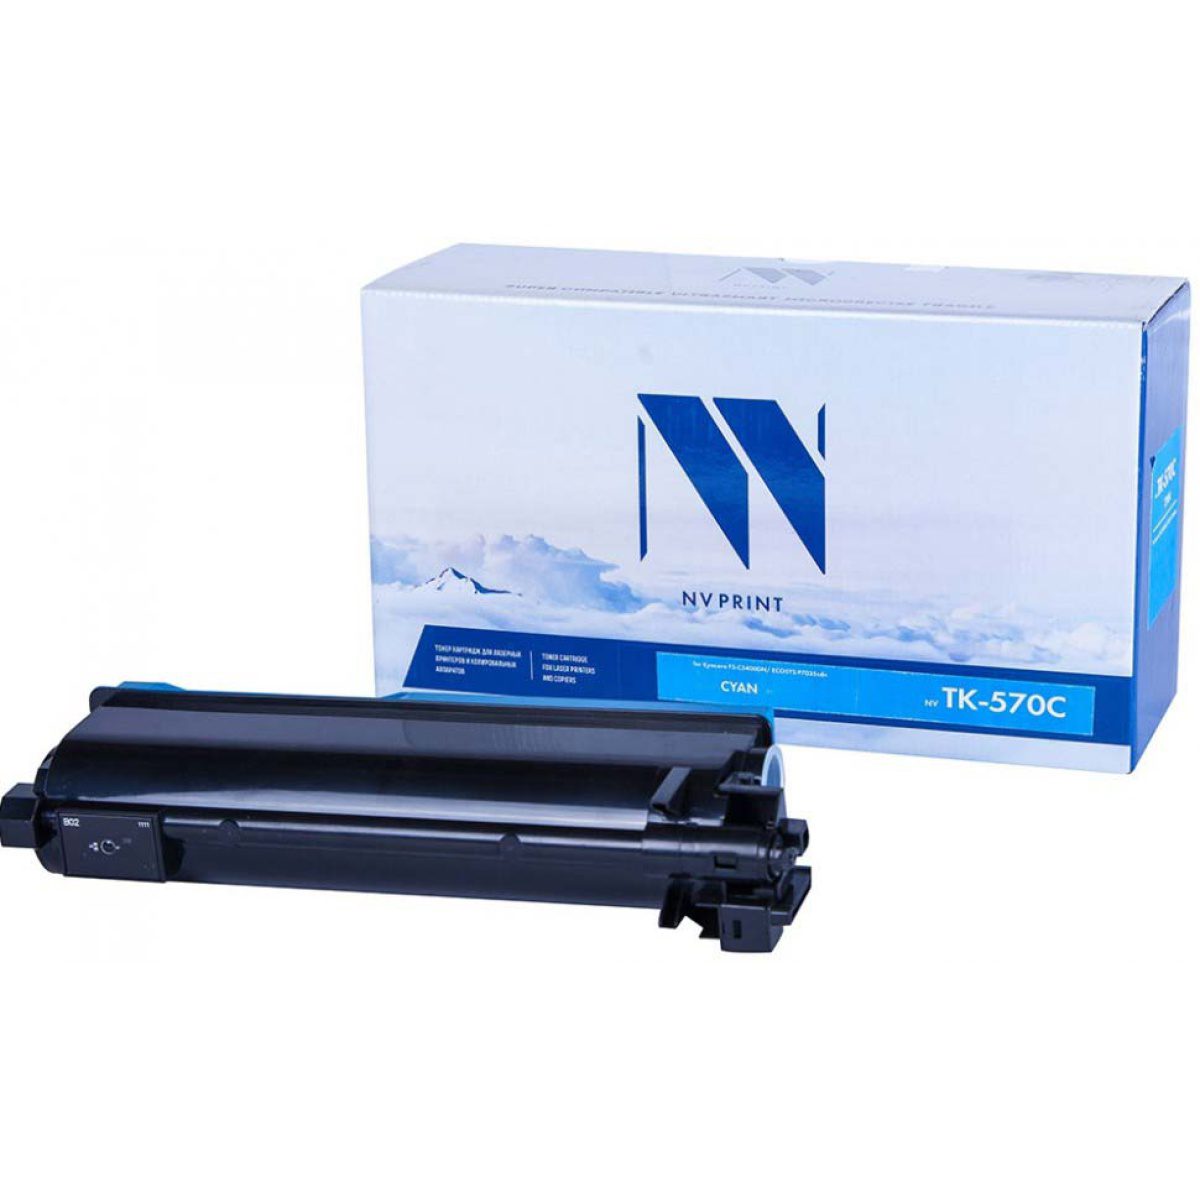 Купить картридж NV Print TK-570 синий по адекватной цене — Digit-Mall